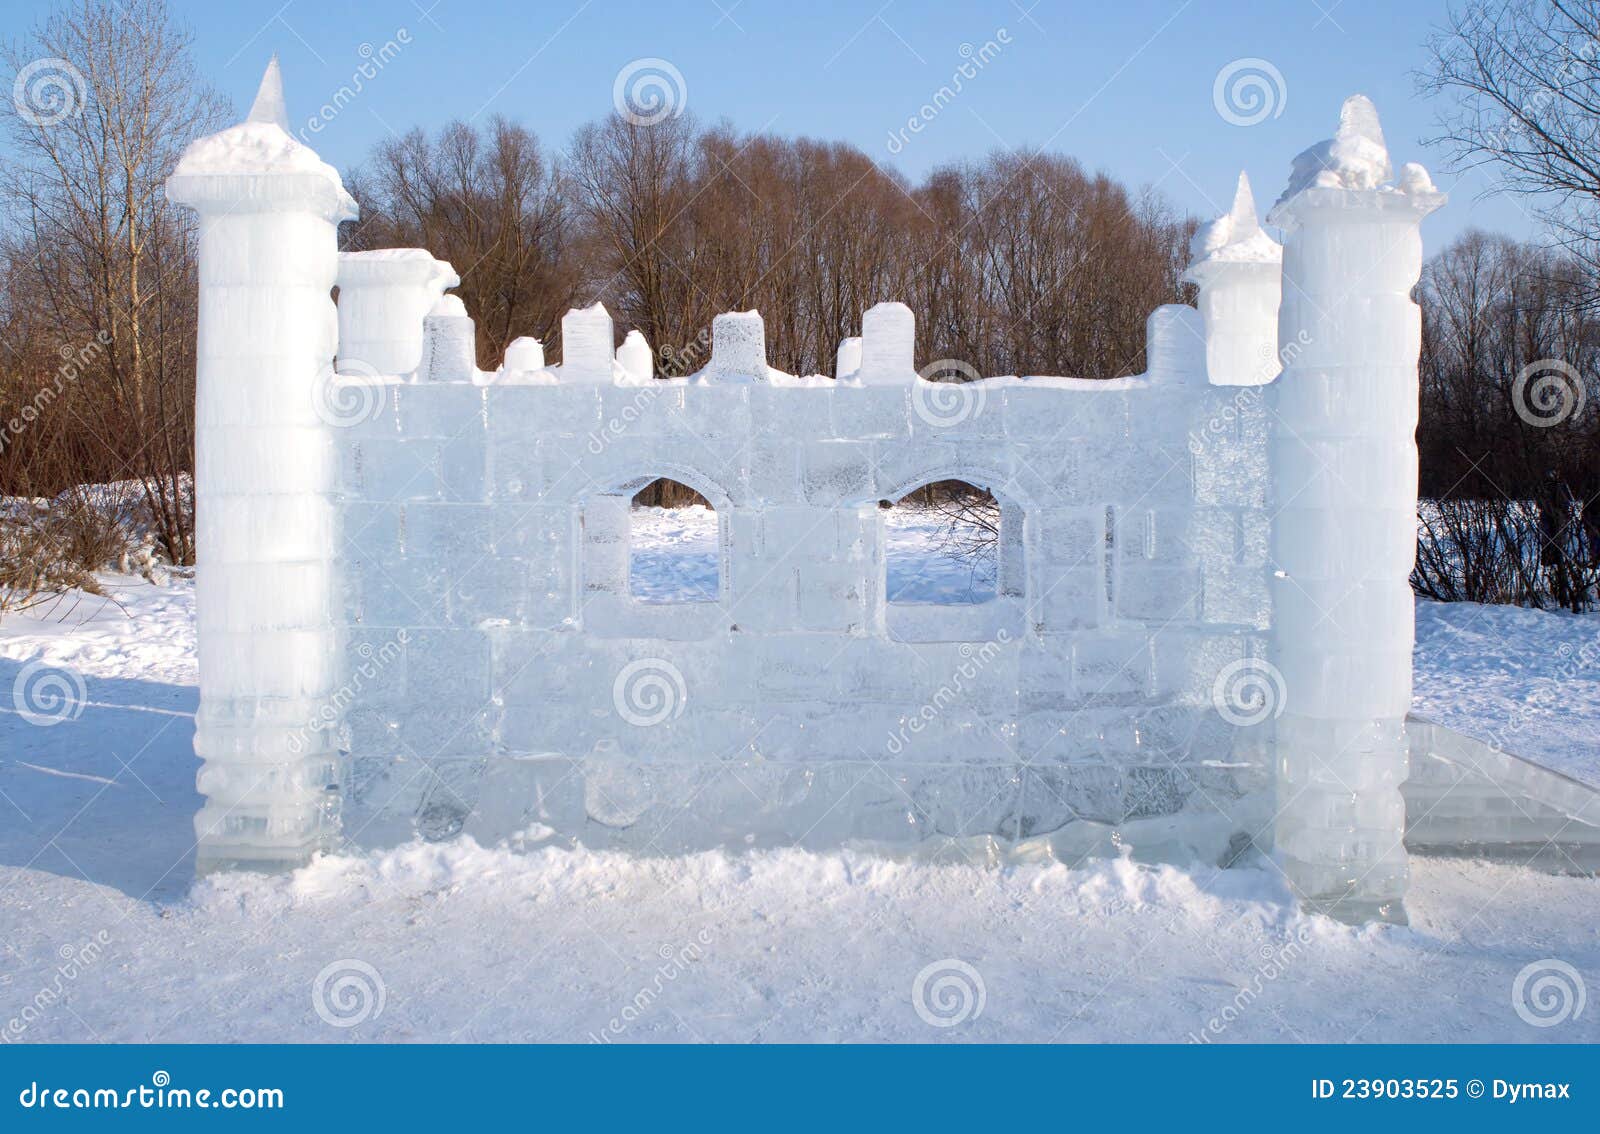 Снежная крепость во дворе